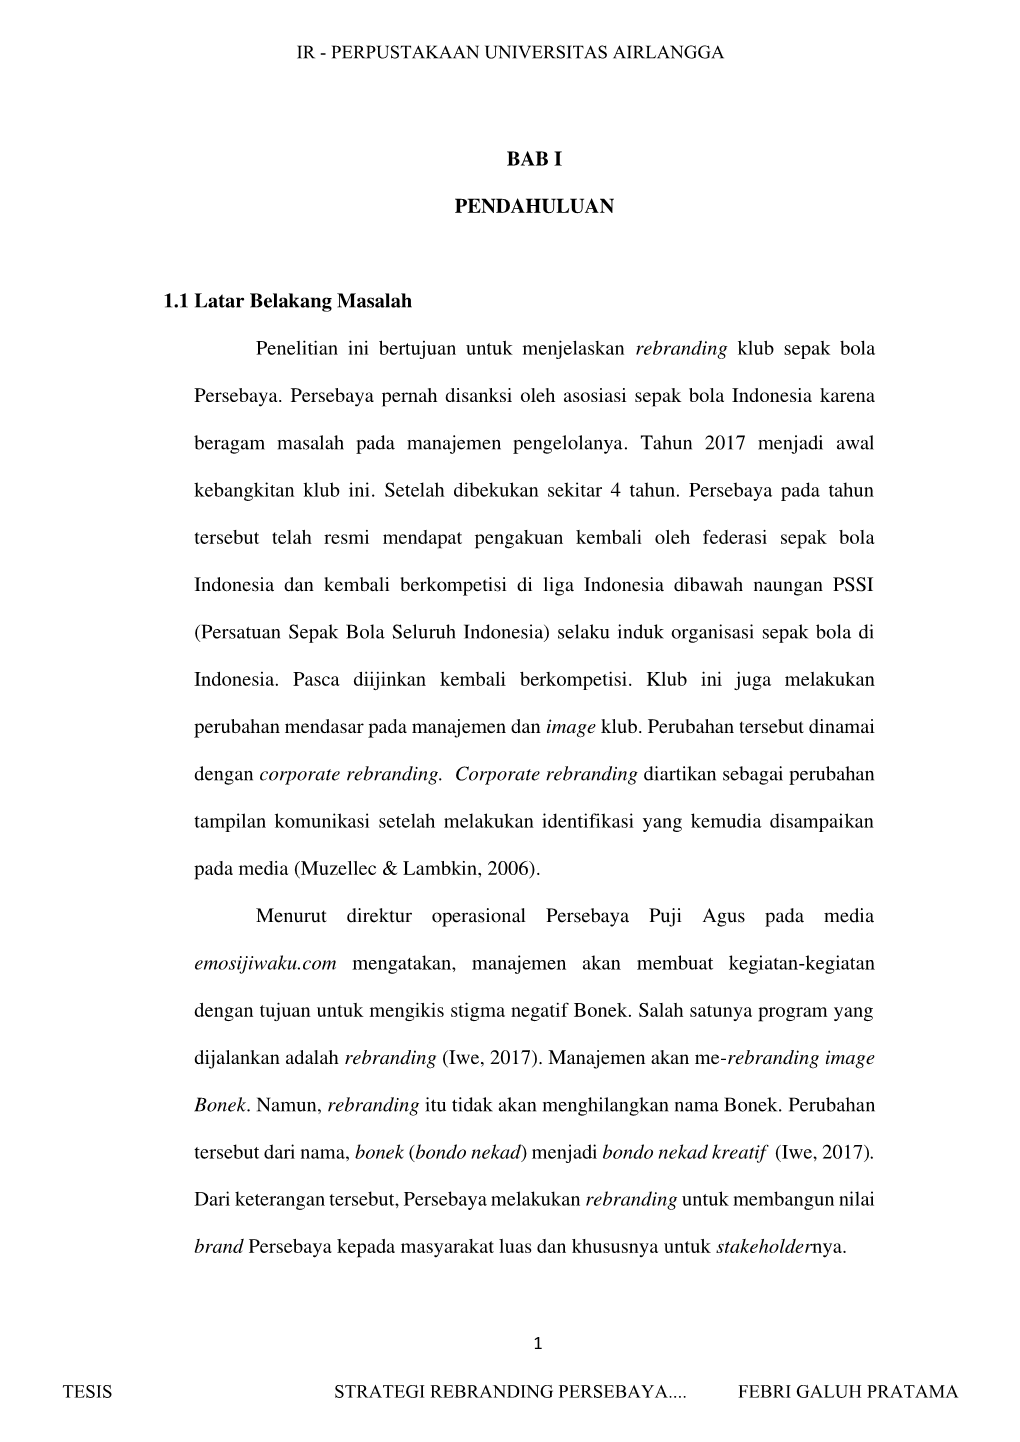 Strategi Rebranding Persebaya Surabaya Dalam Membangun